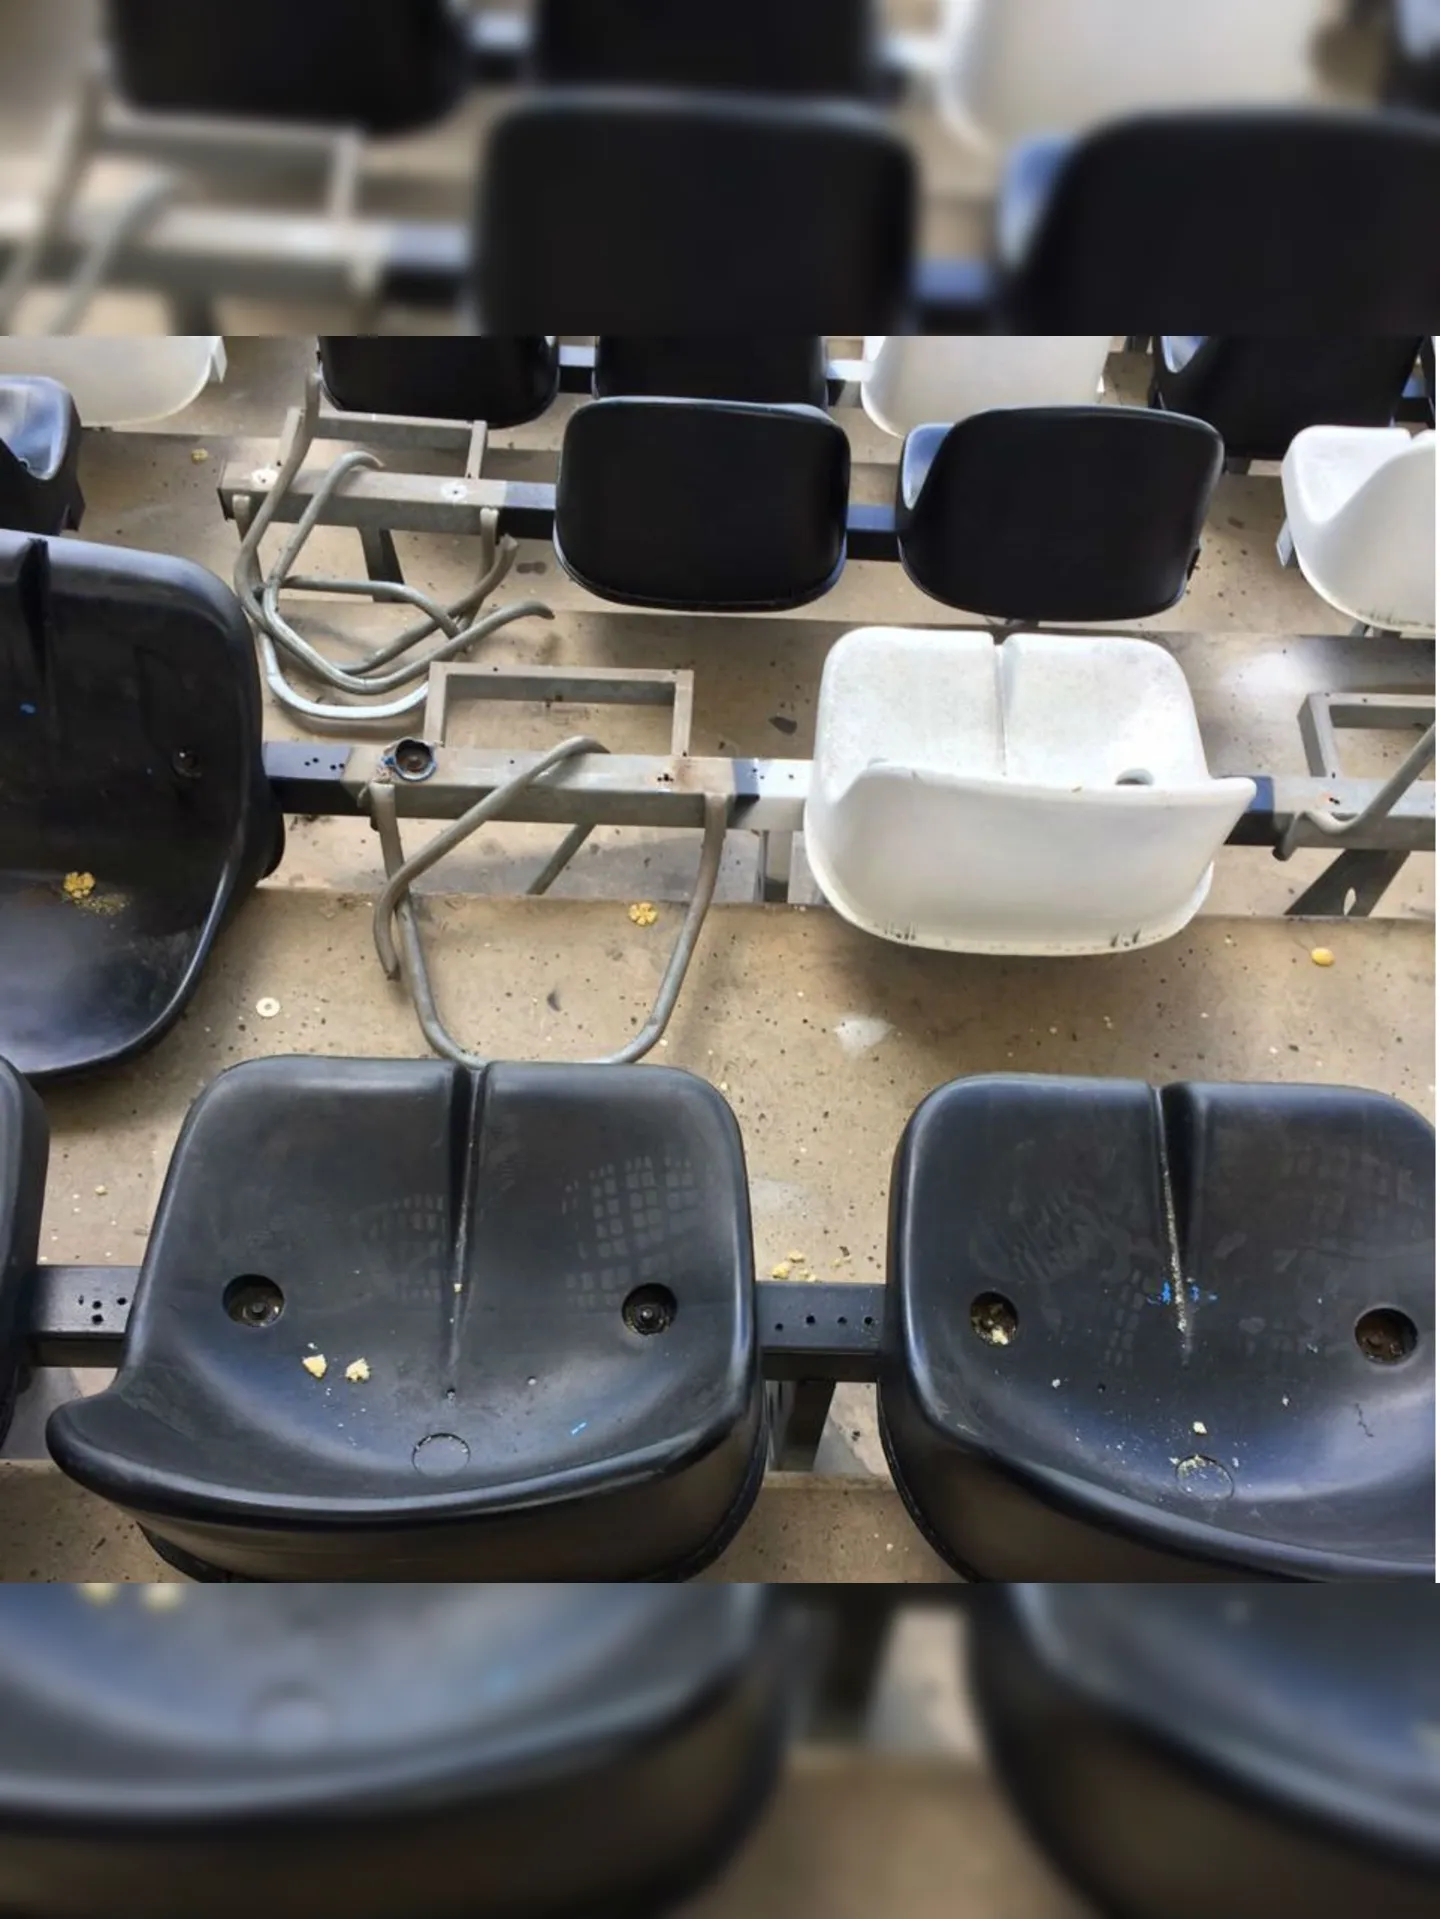 Cadeiras do Estádio Nilton Santos são constantemente quebradas pelas torcidas rivais.